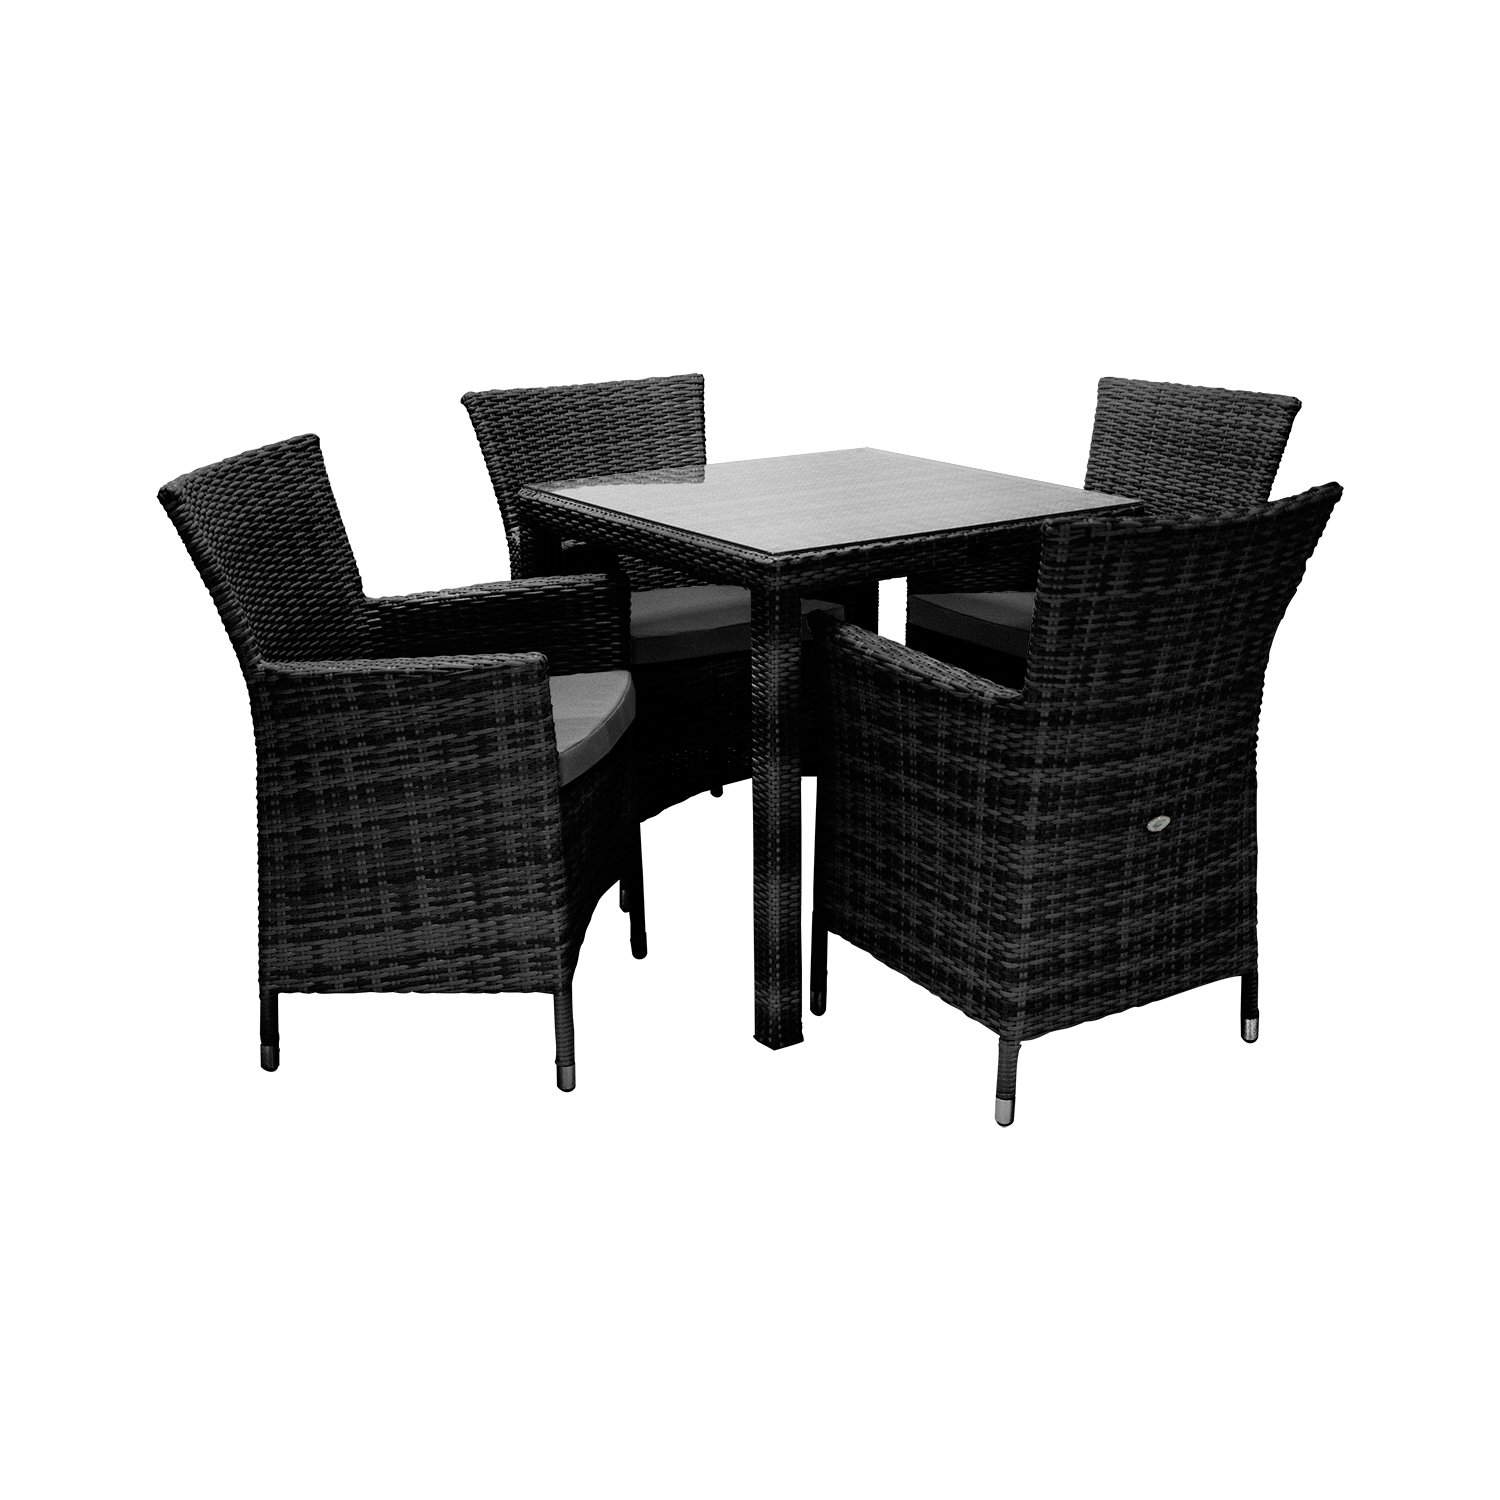 Lauko baldų komplektas WICKER, stalas ir 4 kėdės, juoda